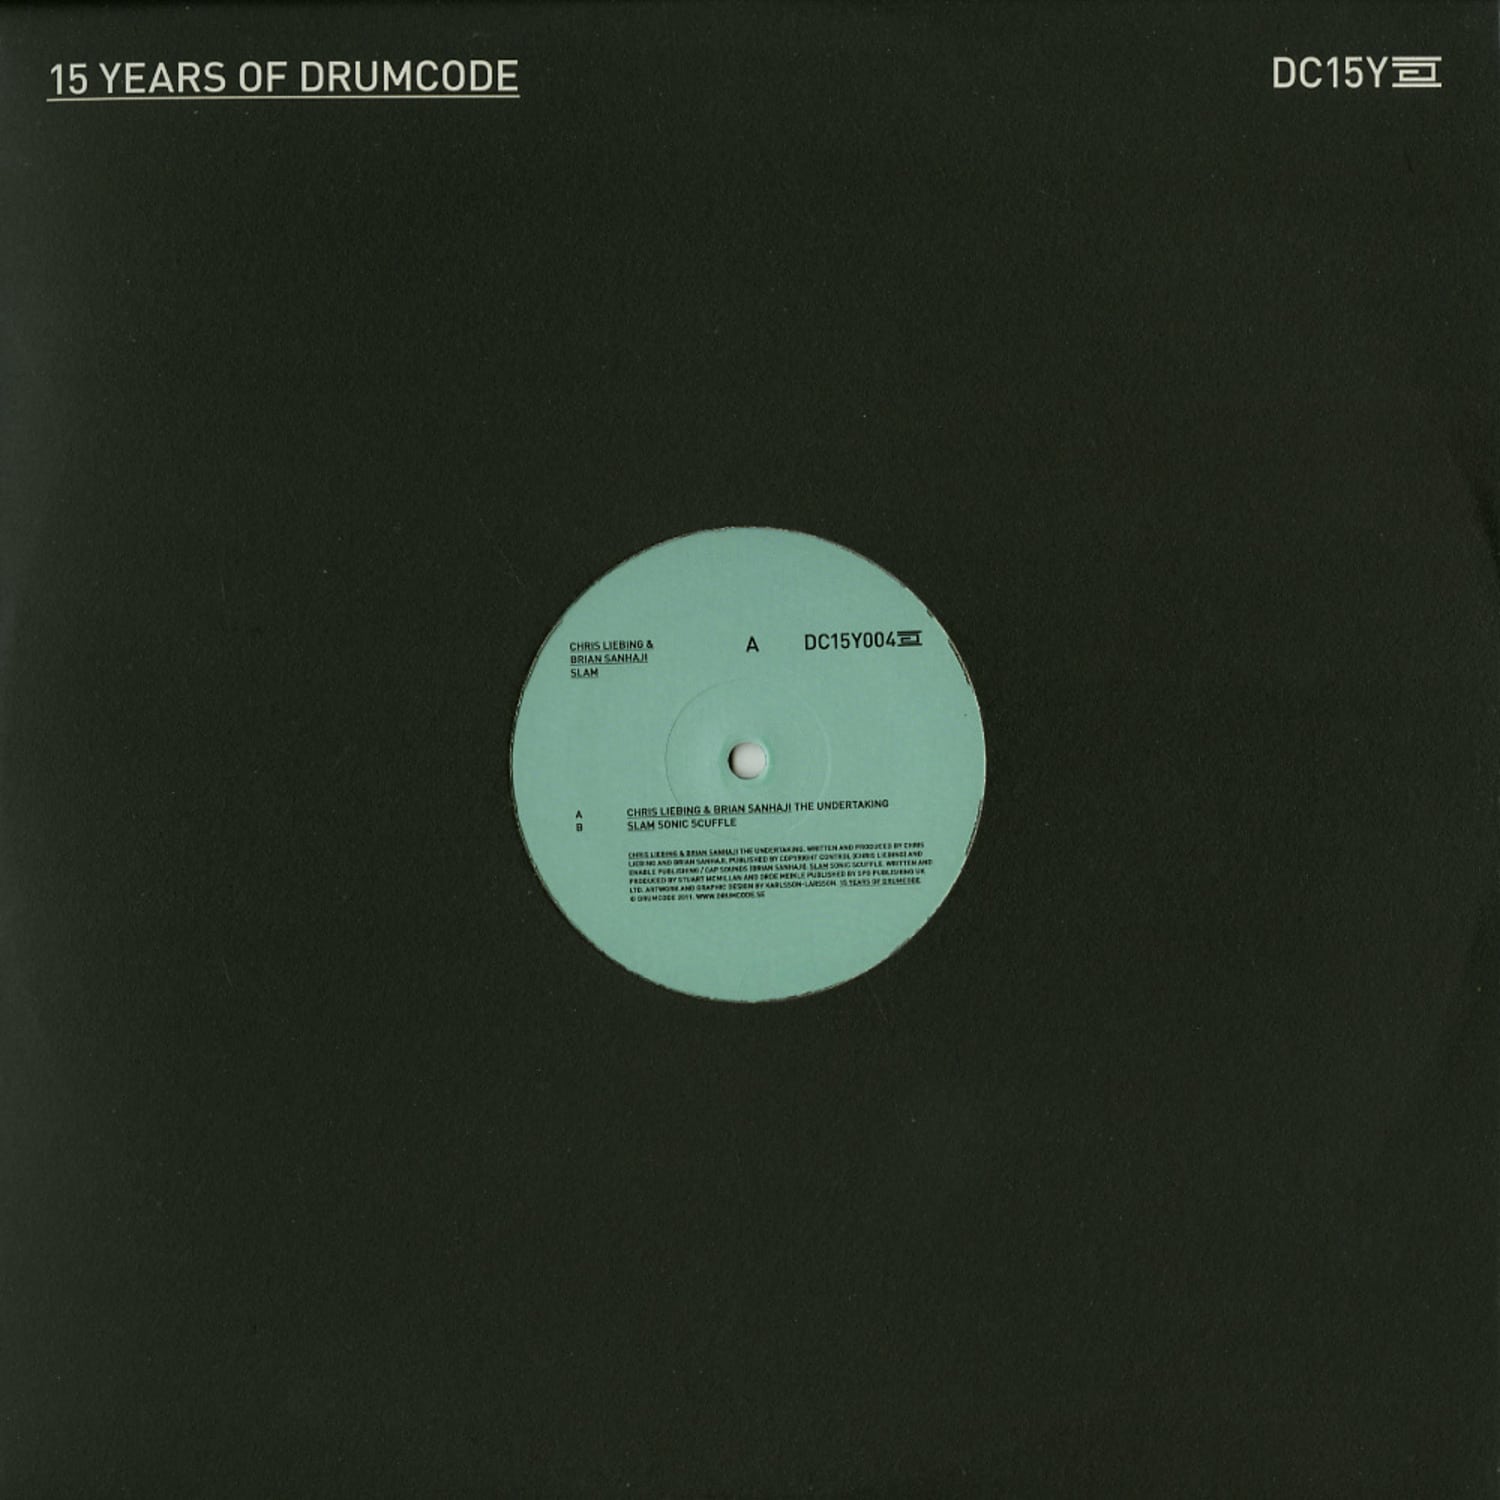 Chris Liebing and Brian Sanhaji / Slam - 15 YEARS OF DRUMCODE PT. 4